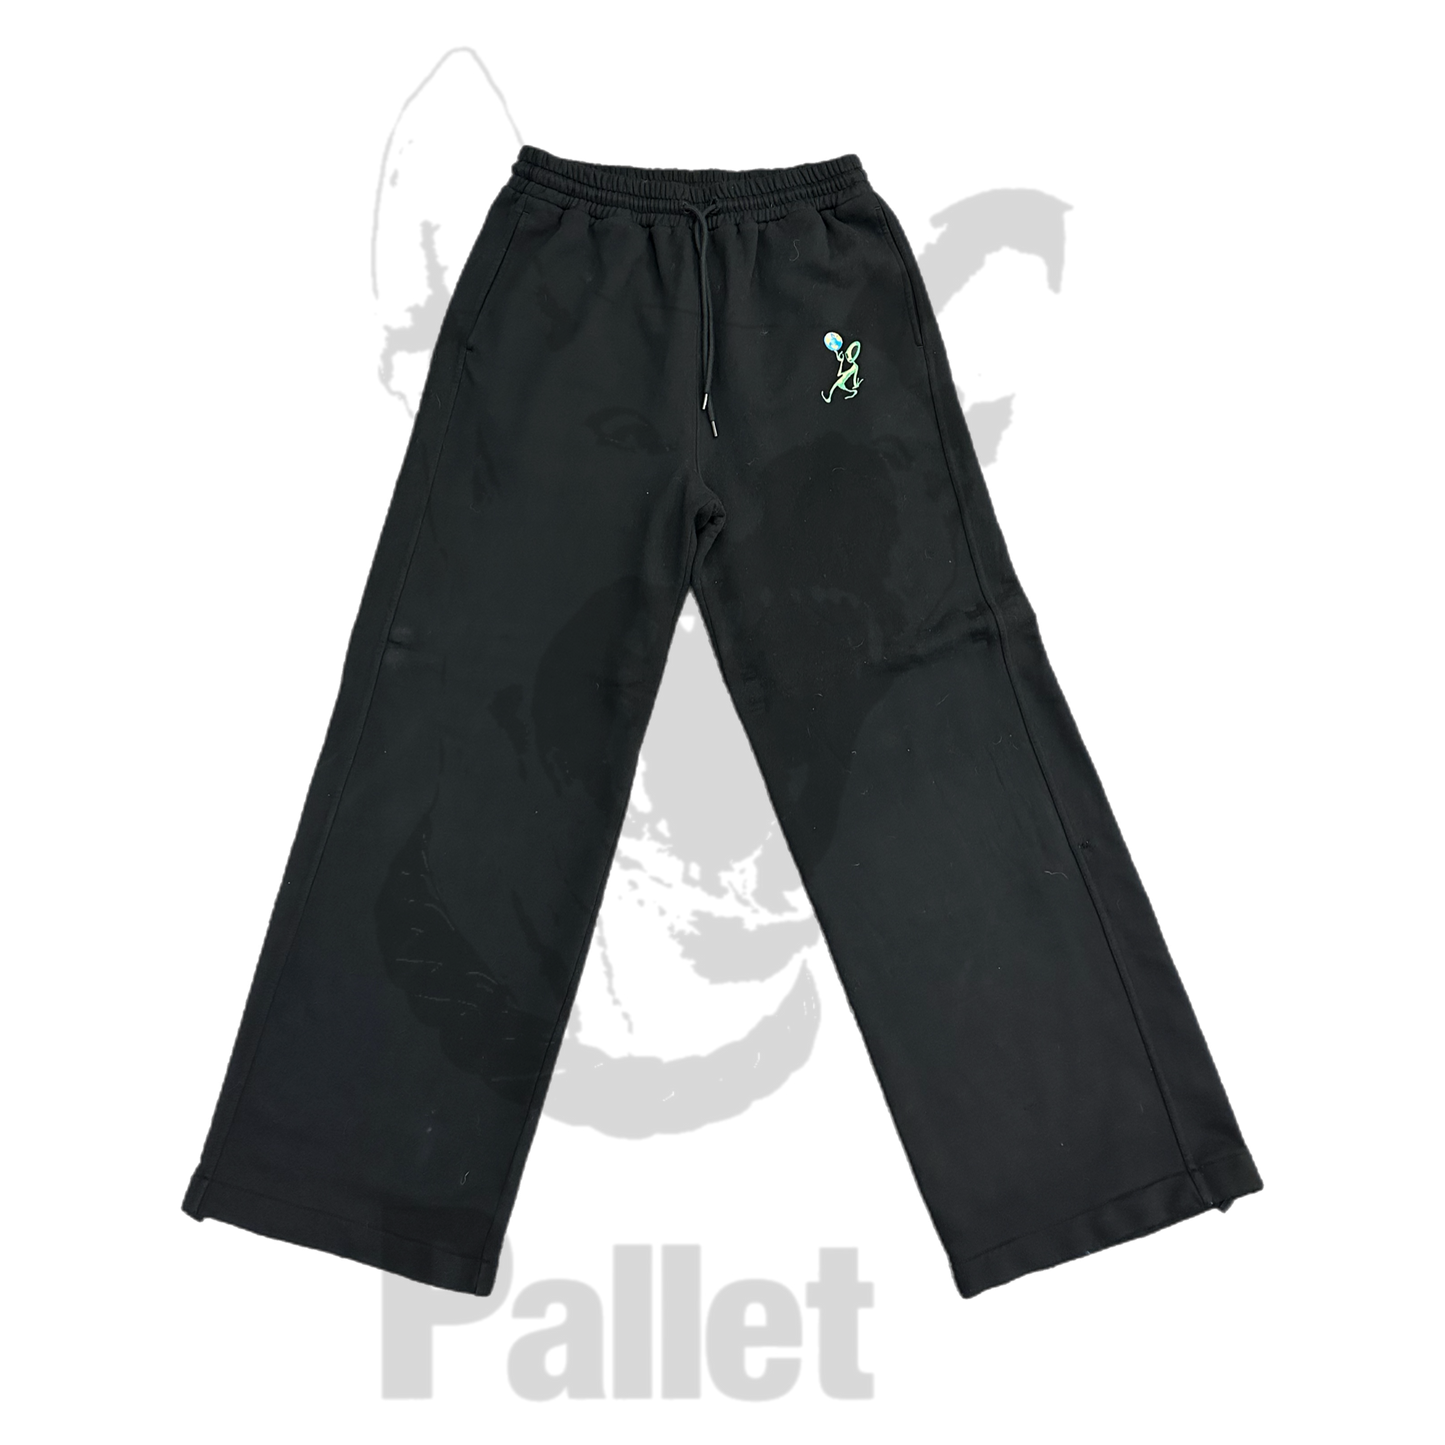 Off-White - "Alien Sweatpants Black" - Size Large